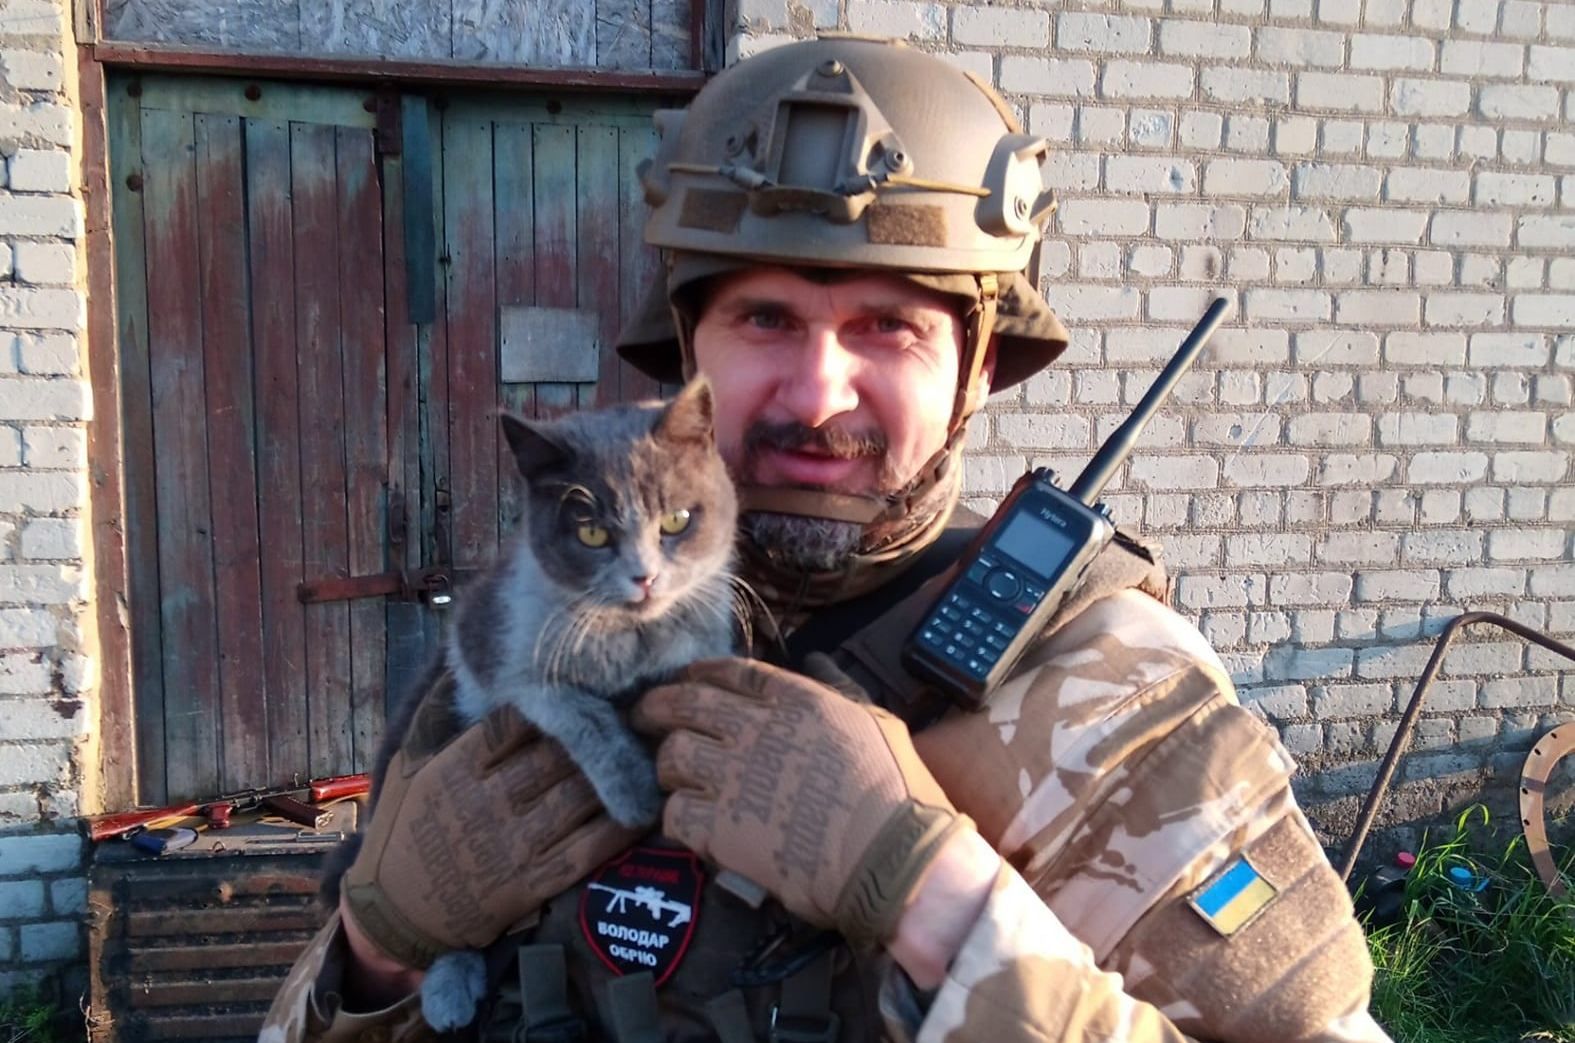 "Їхньому мирному життю також прийшов кінець"  Олег Сенцов показав фото з врятованим котом - Кіно